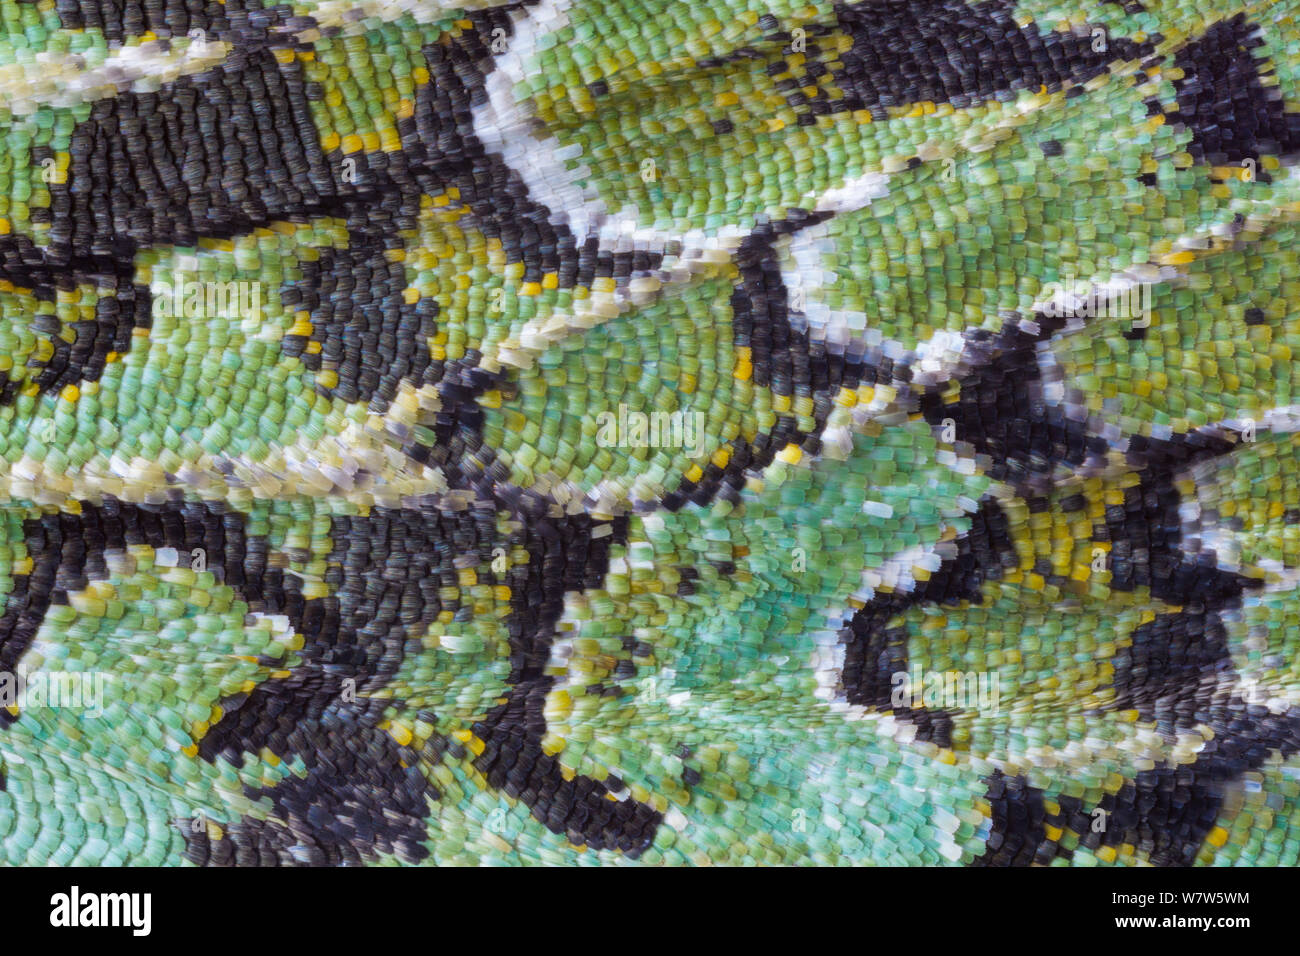 Nahaufnahme des Flügels von merveille-du-jour Motte (Dichonia aprilina), mit Waage deutlich sichtbar. Diese Art ist gut gegen Flechten getarnt. Leicestershire, UK. September. Stockfoto